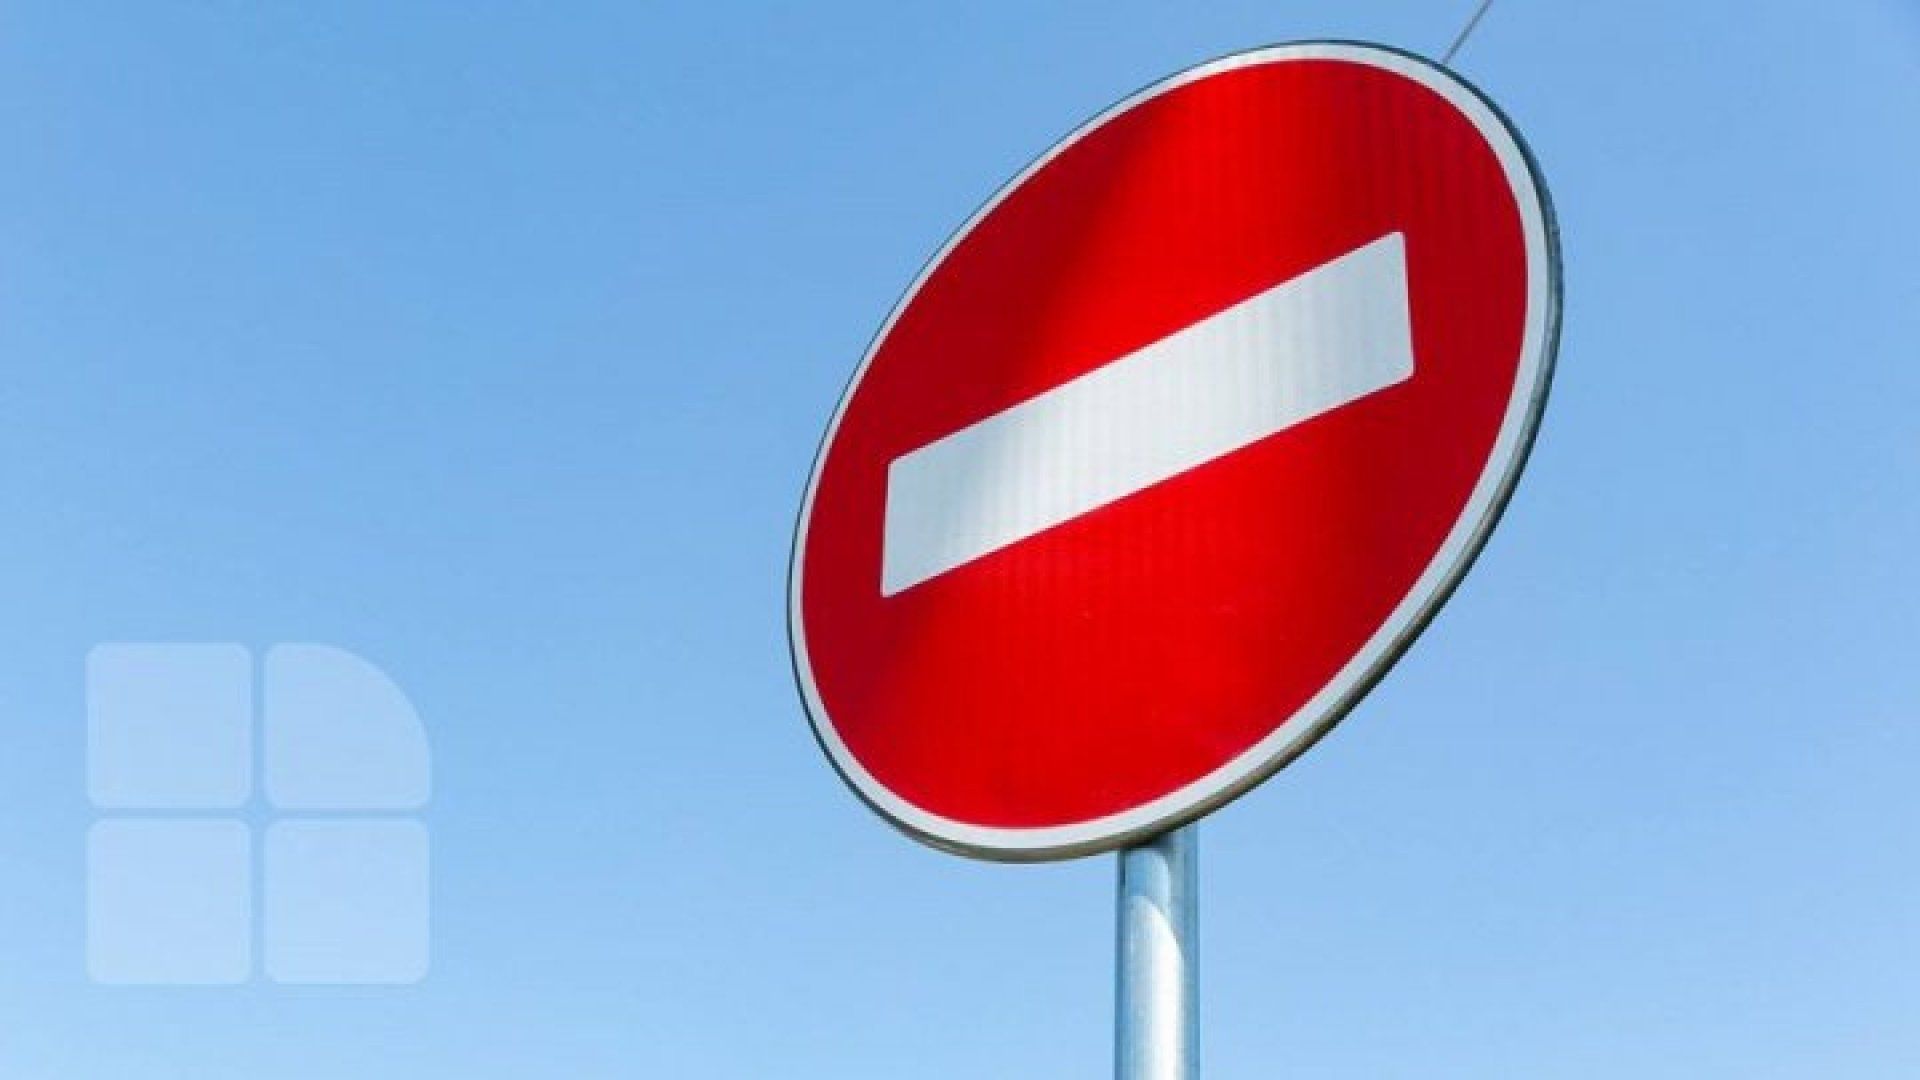 Atenție! Restricții temporare de trafic pe arterele principale din sectoarele Centru și Botanica, duminică. Vor fi și limitări de trafic pe traseele Bulboaca-Chișinău